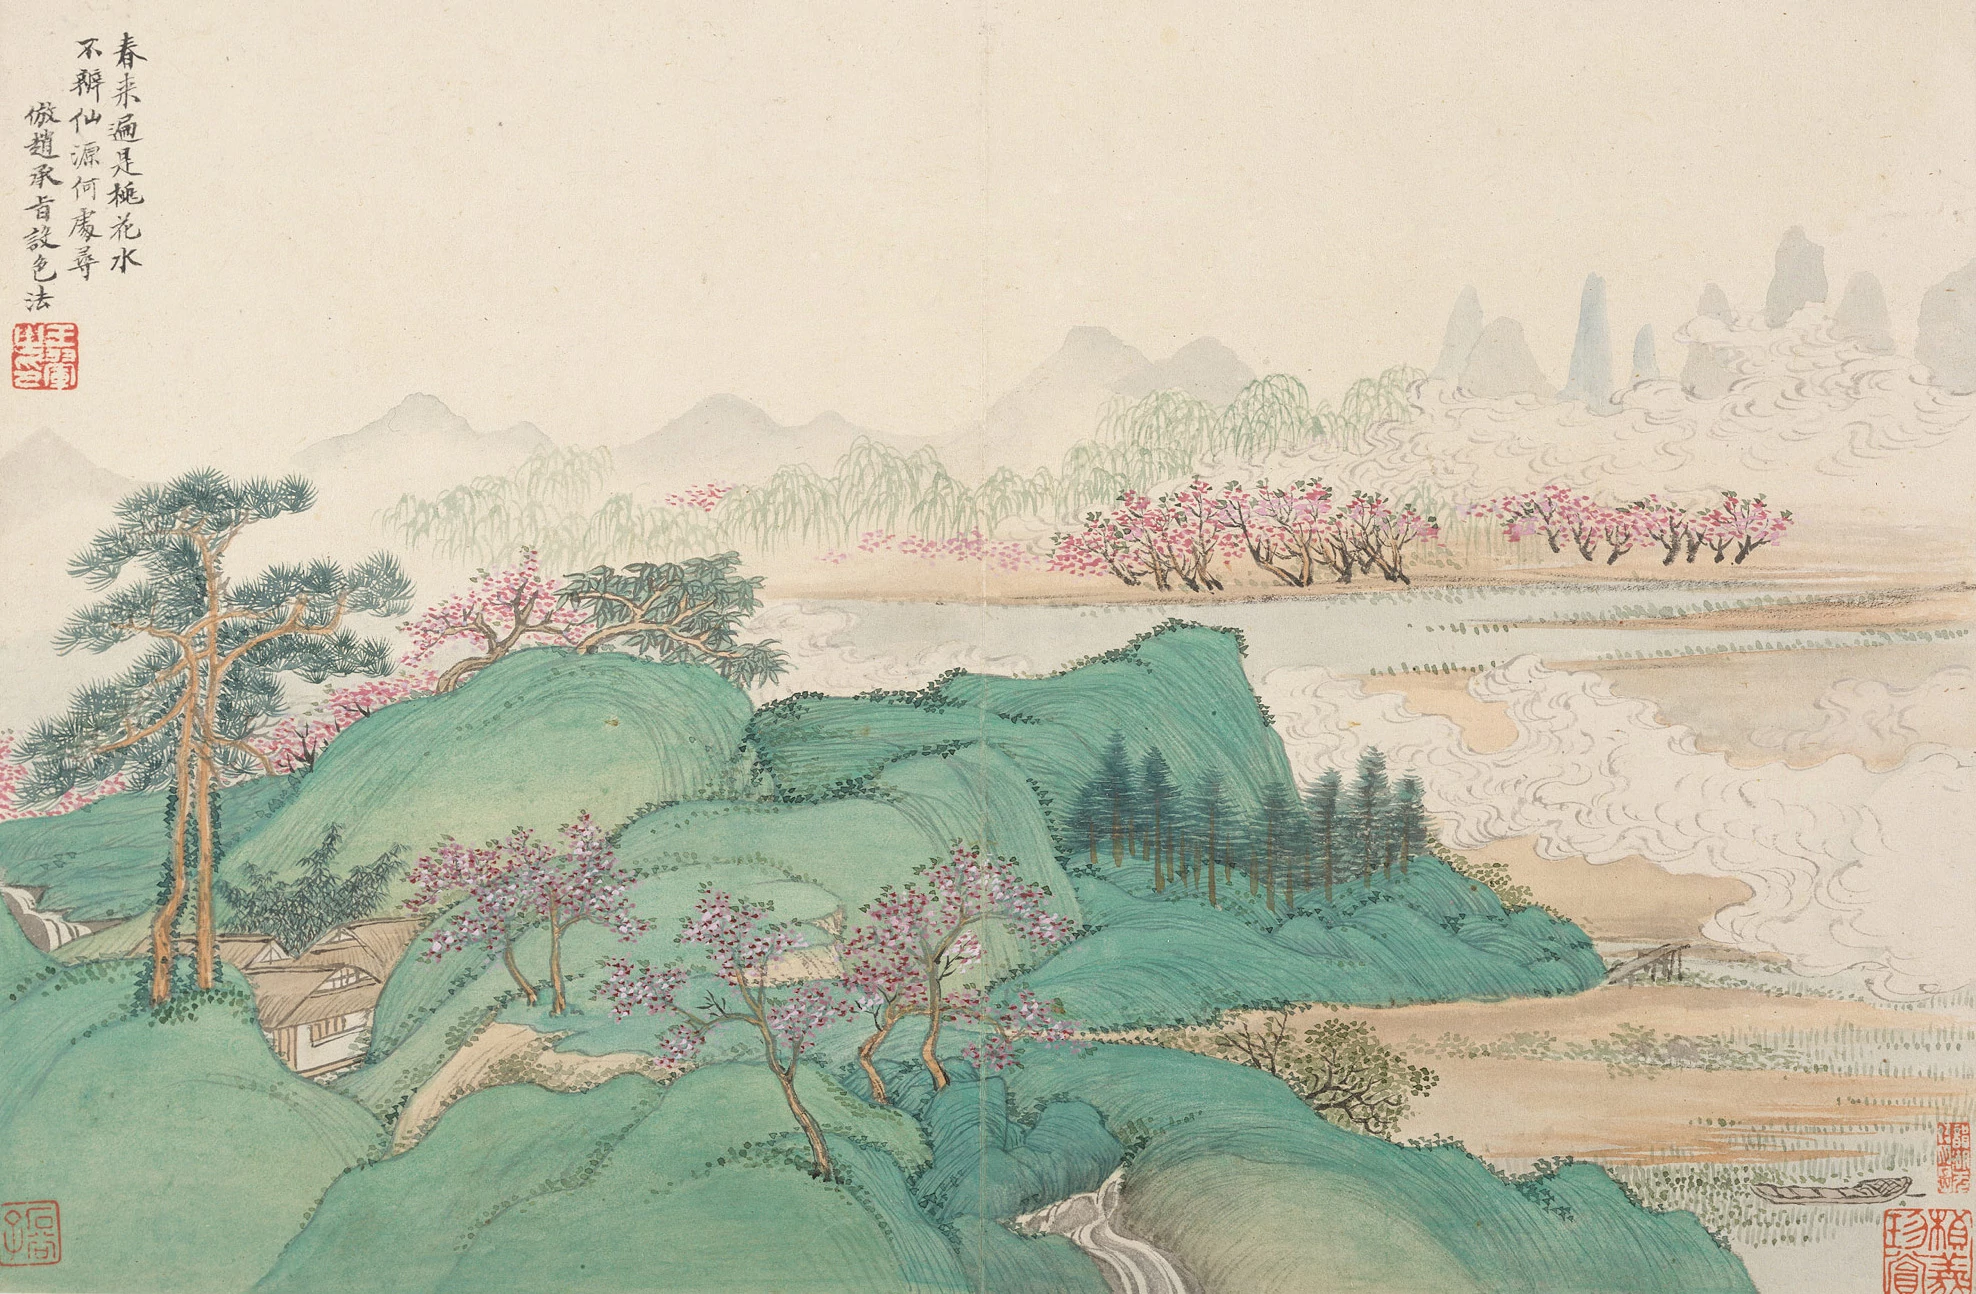 Wang Hui (王翚), The Artists